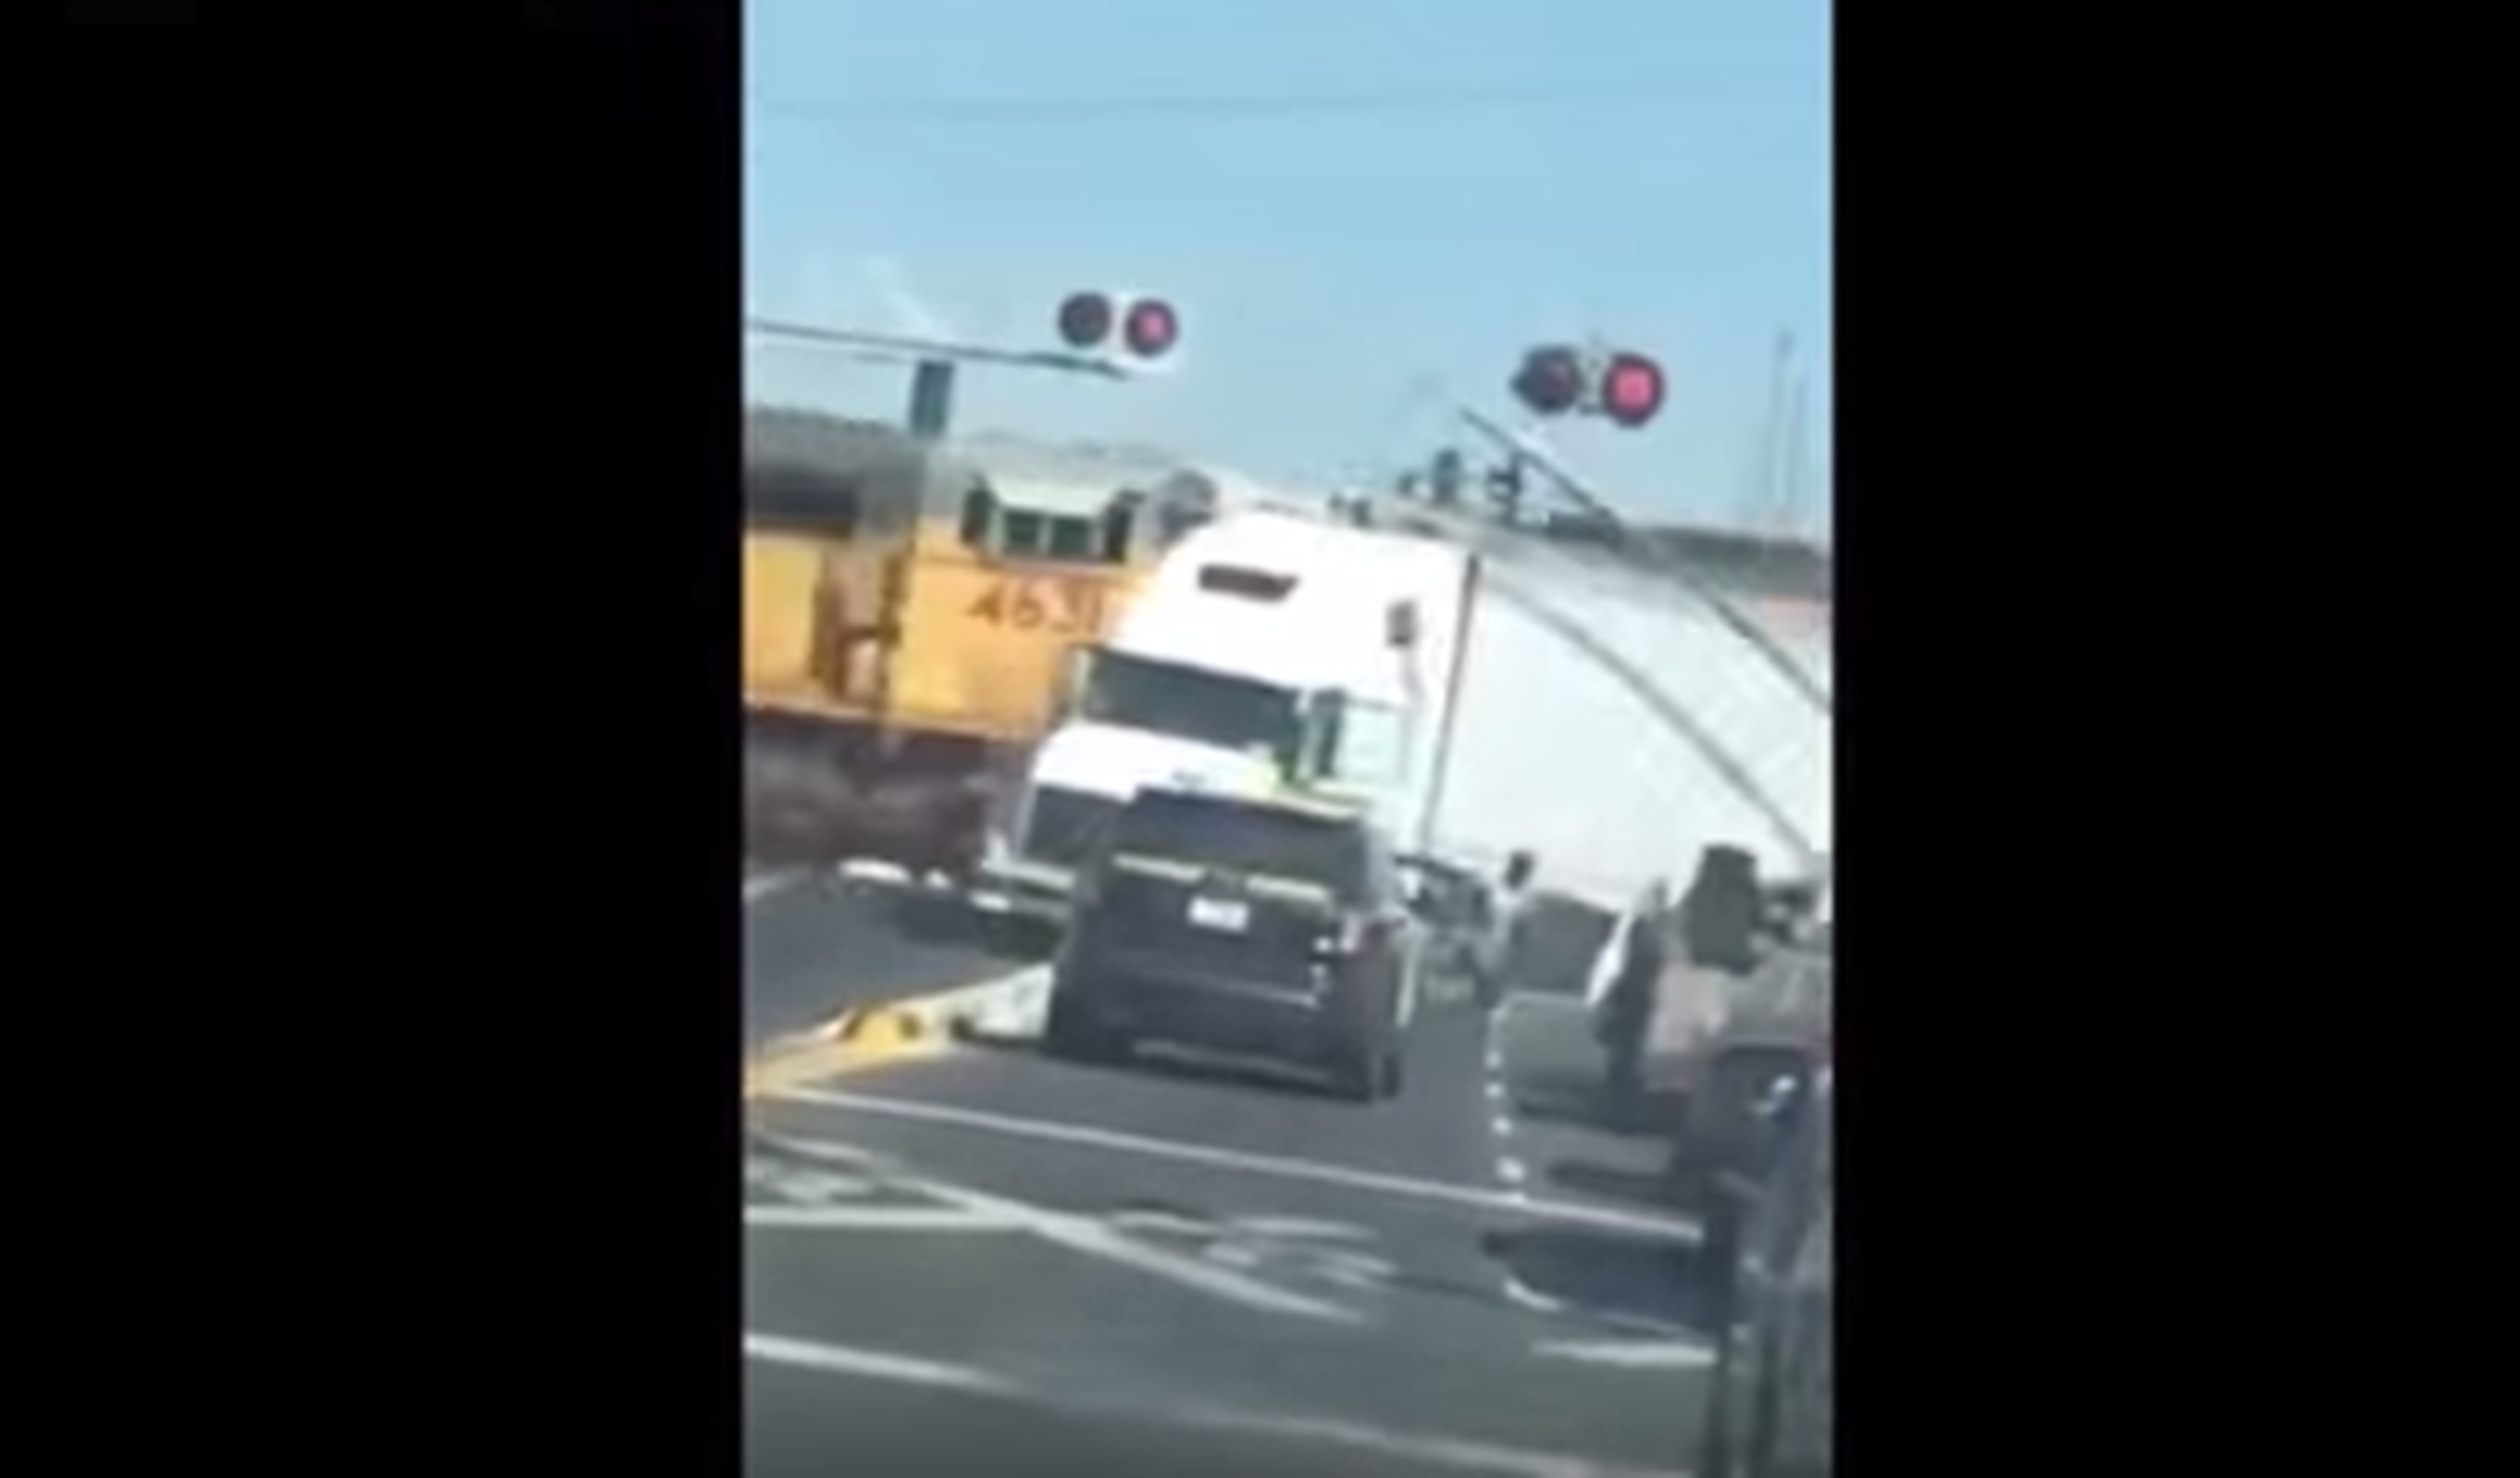 Salta del camión justo antes de que lo arrolle el tren